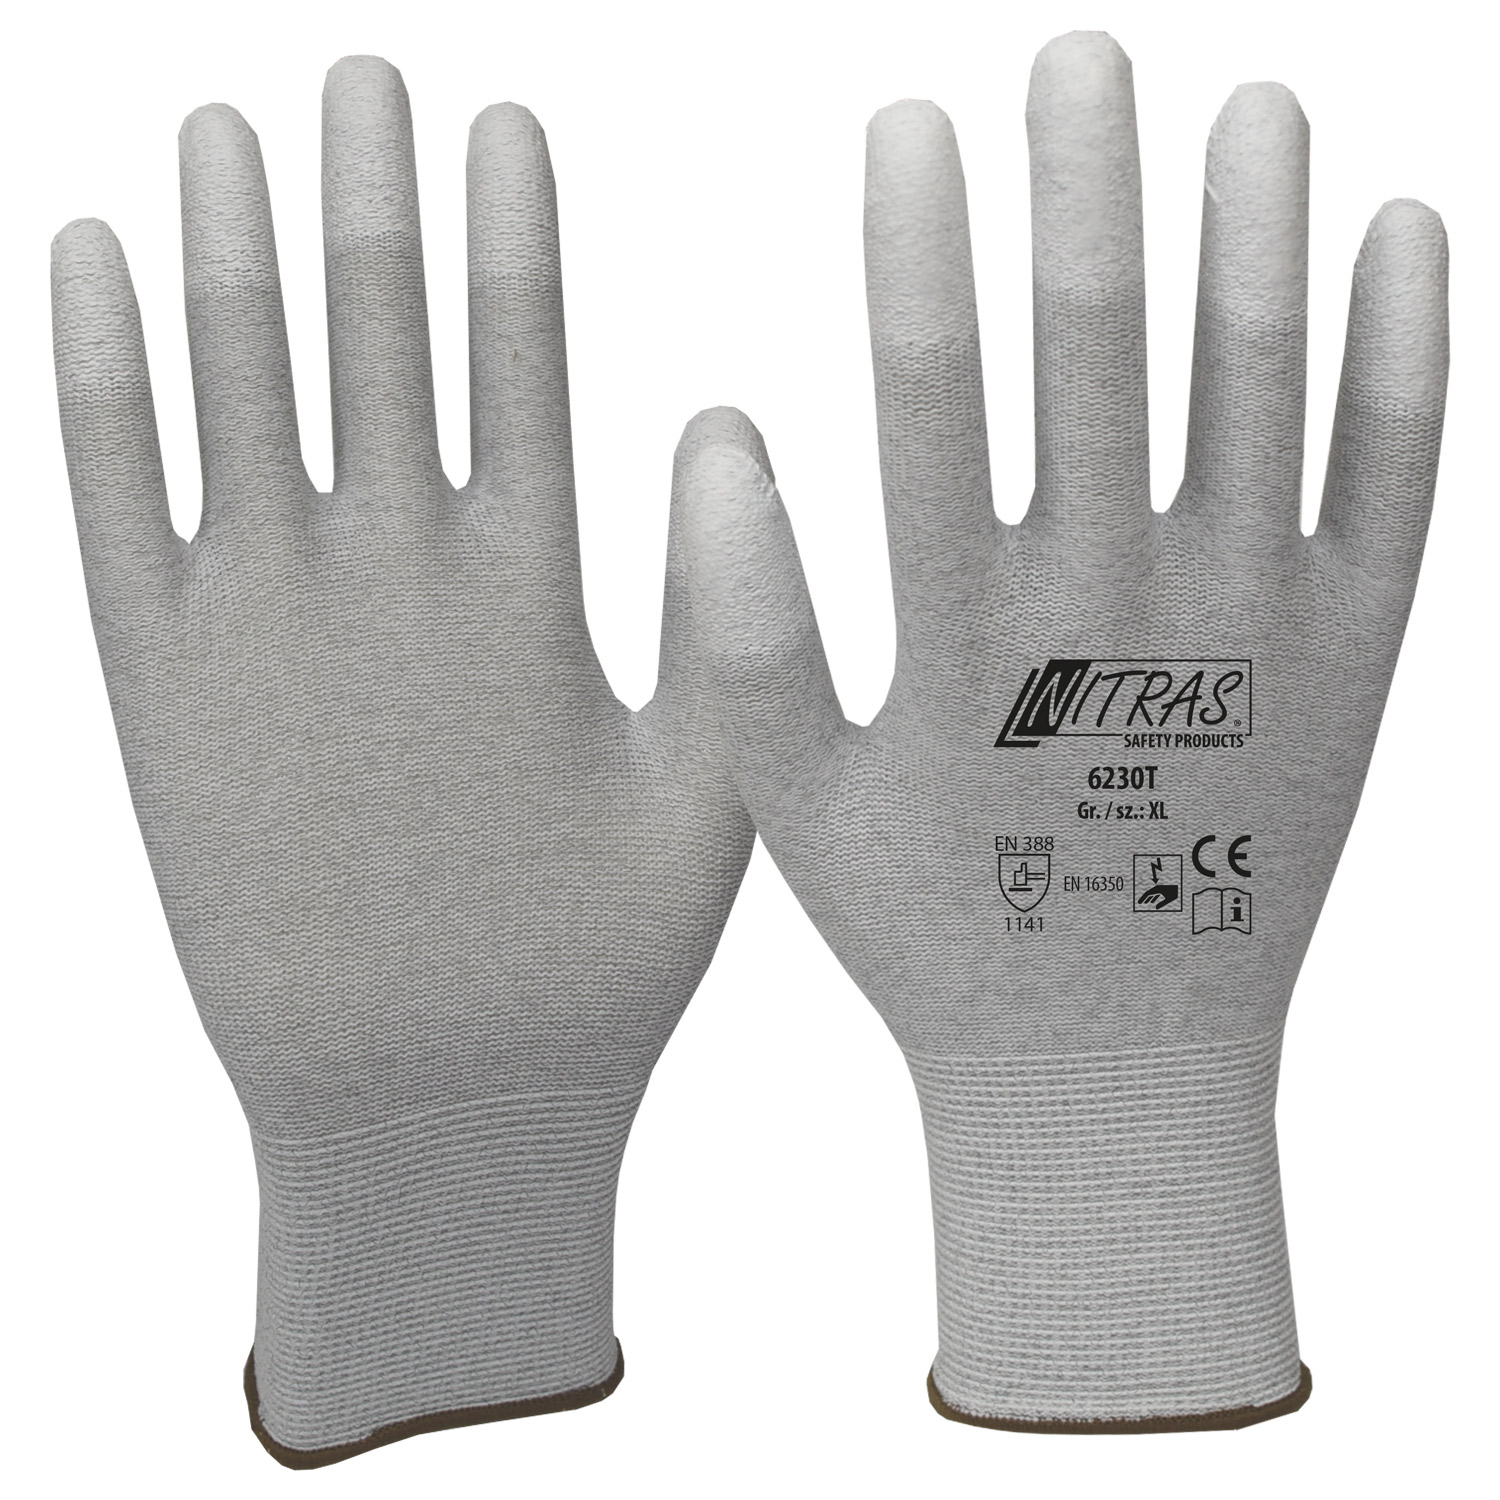 NITRAS 6230T ESD Handschuhe, Nylon-Carbon-Strick, antistatisch, PU-Beschichtung, touchscreenfähig